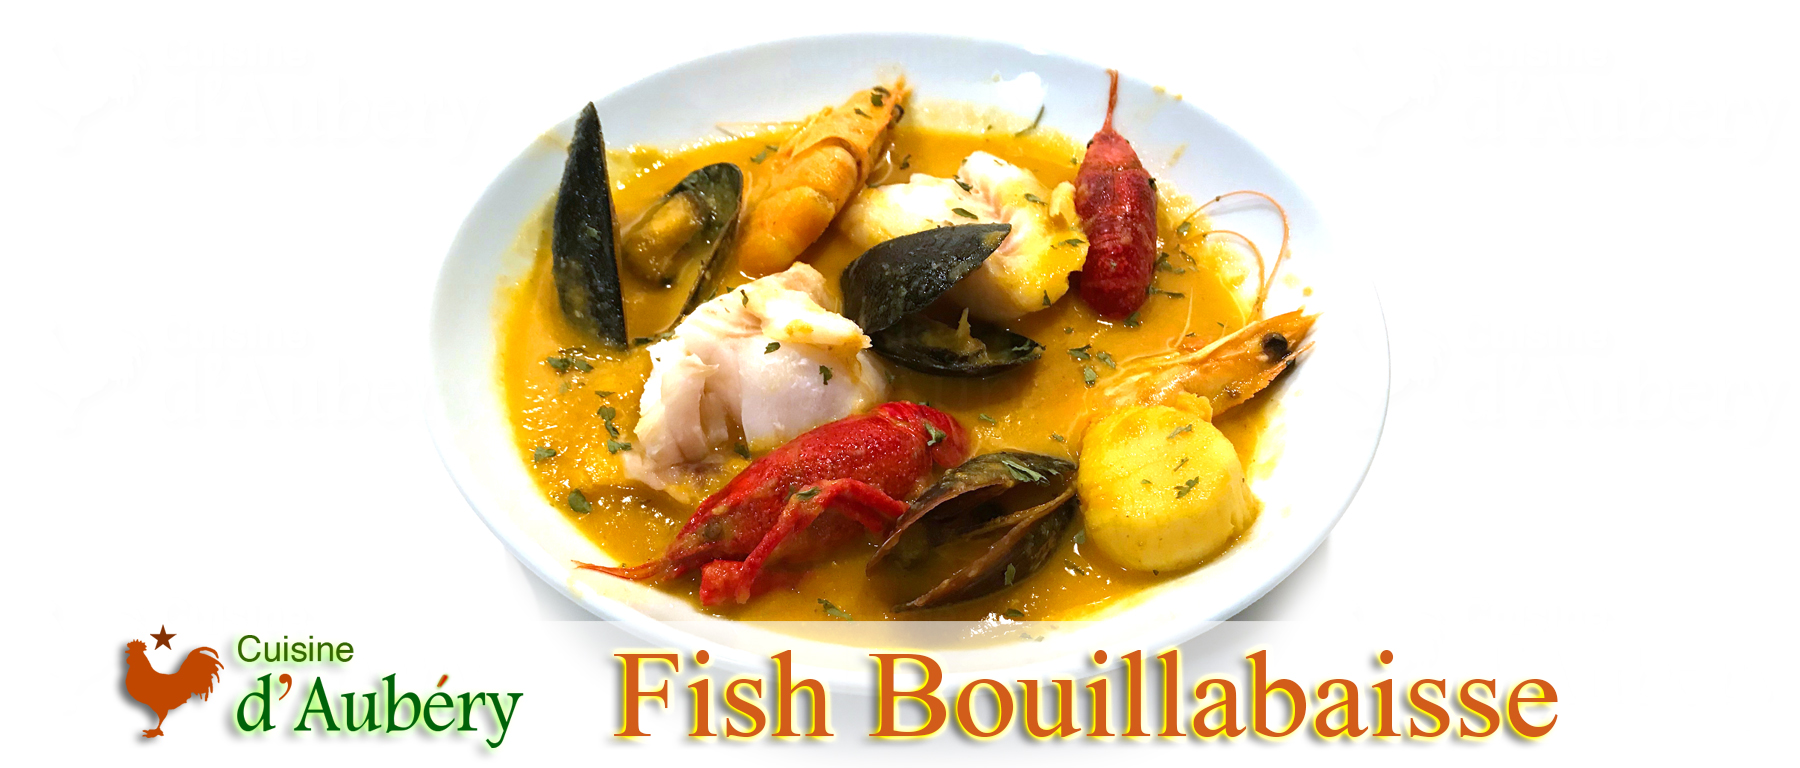 French Fish Bouillabaisse (Stew)